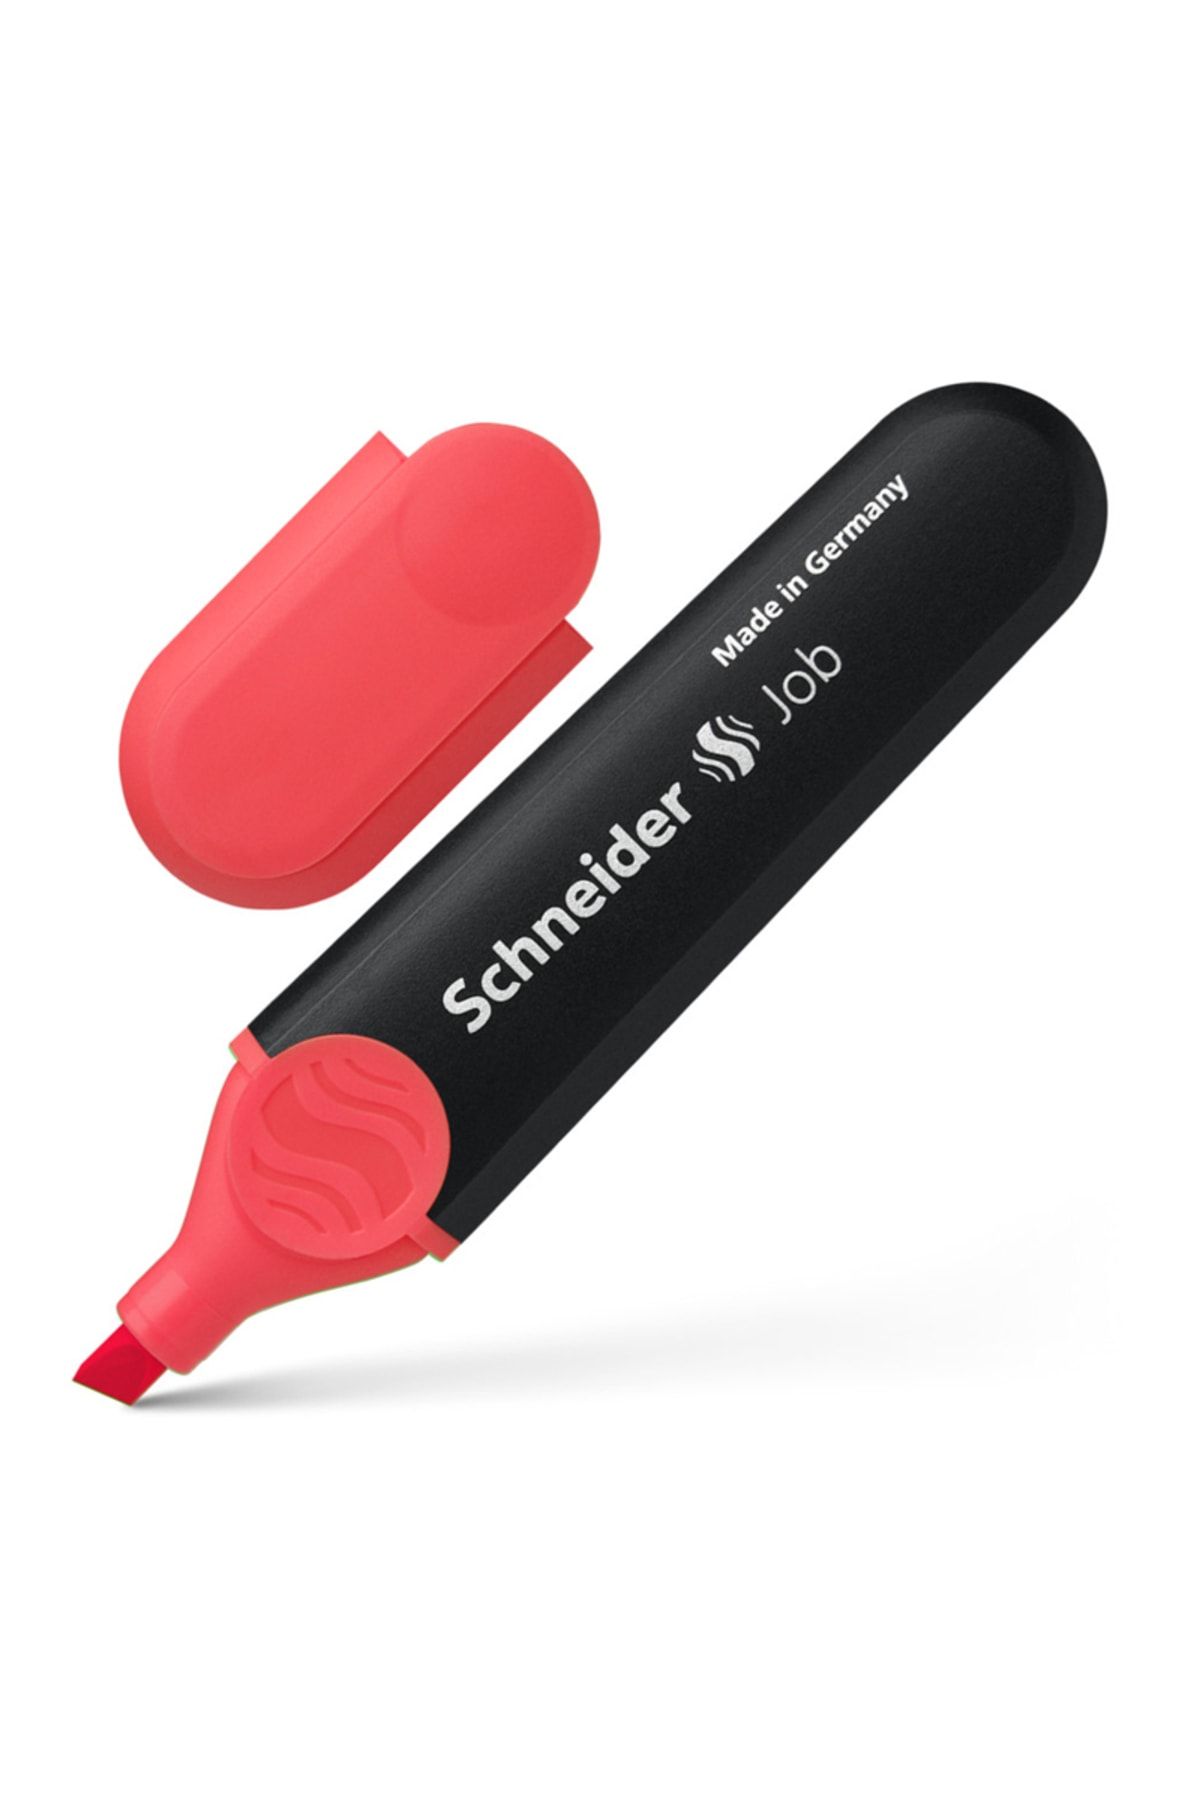 Schneider Işaretleme Kalemi Kırmızı